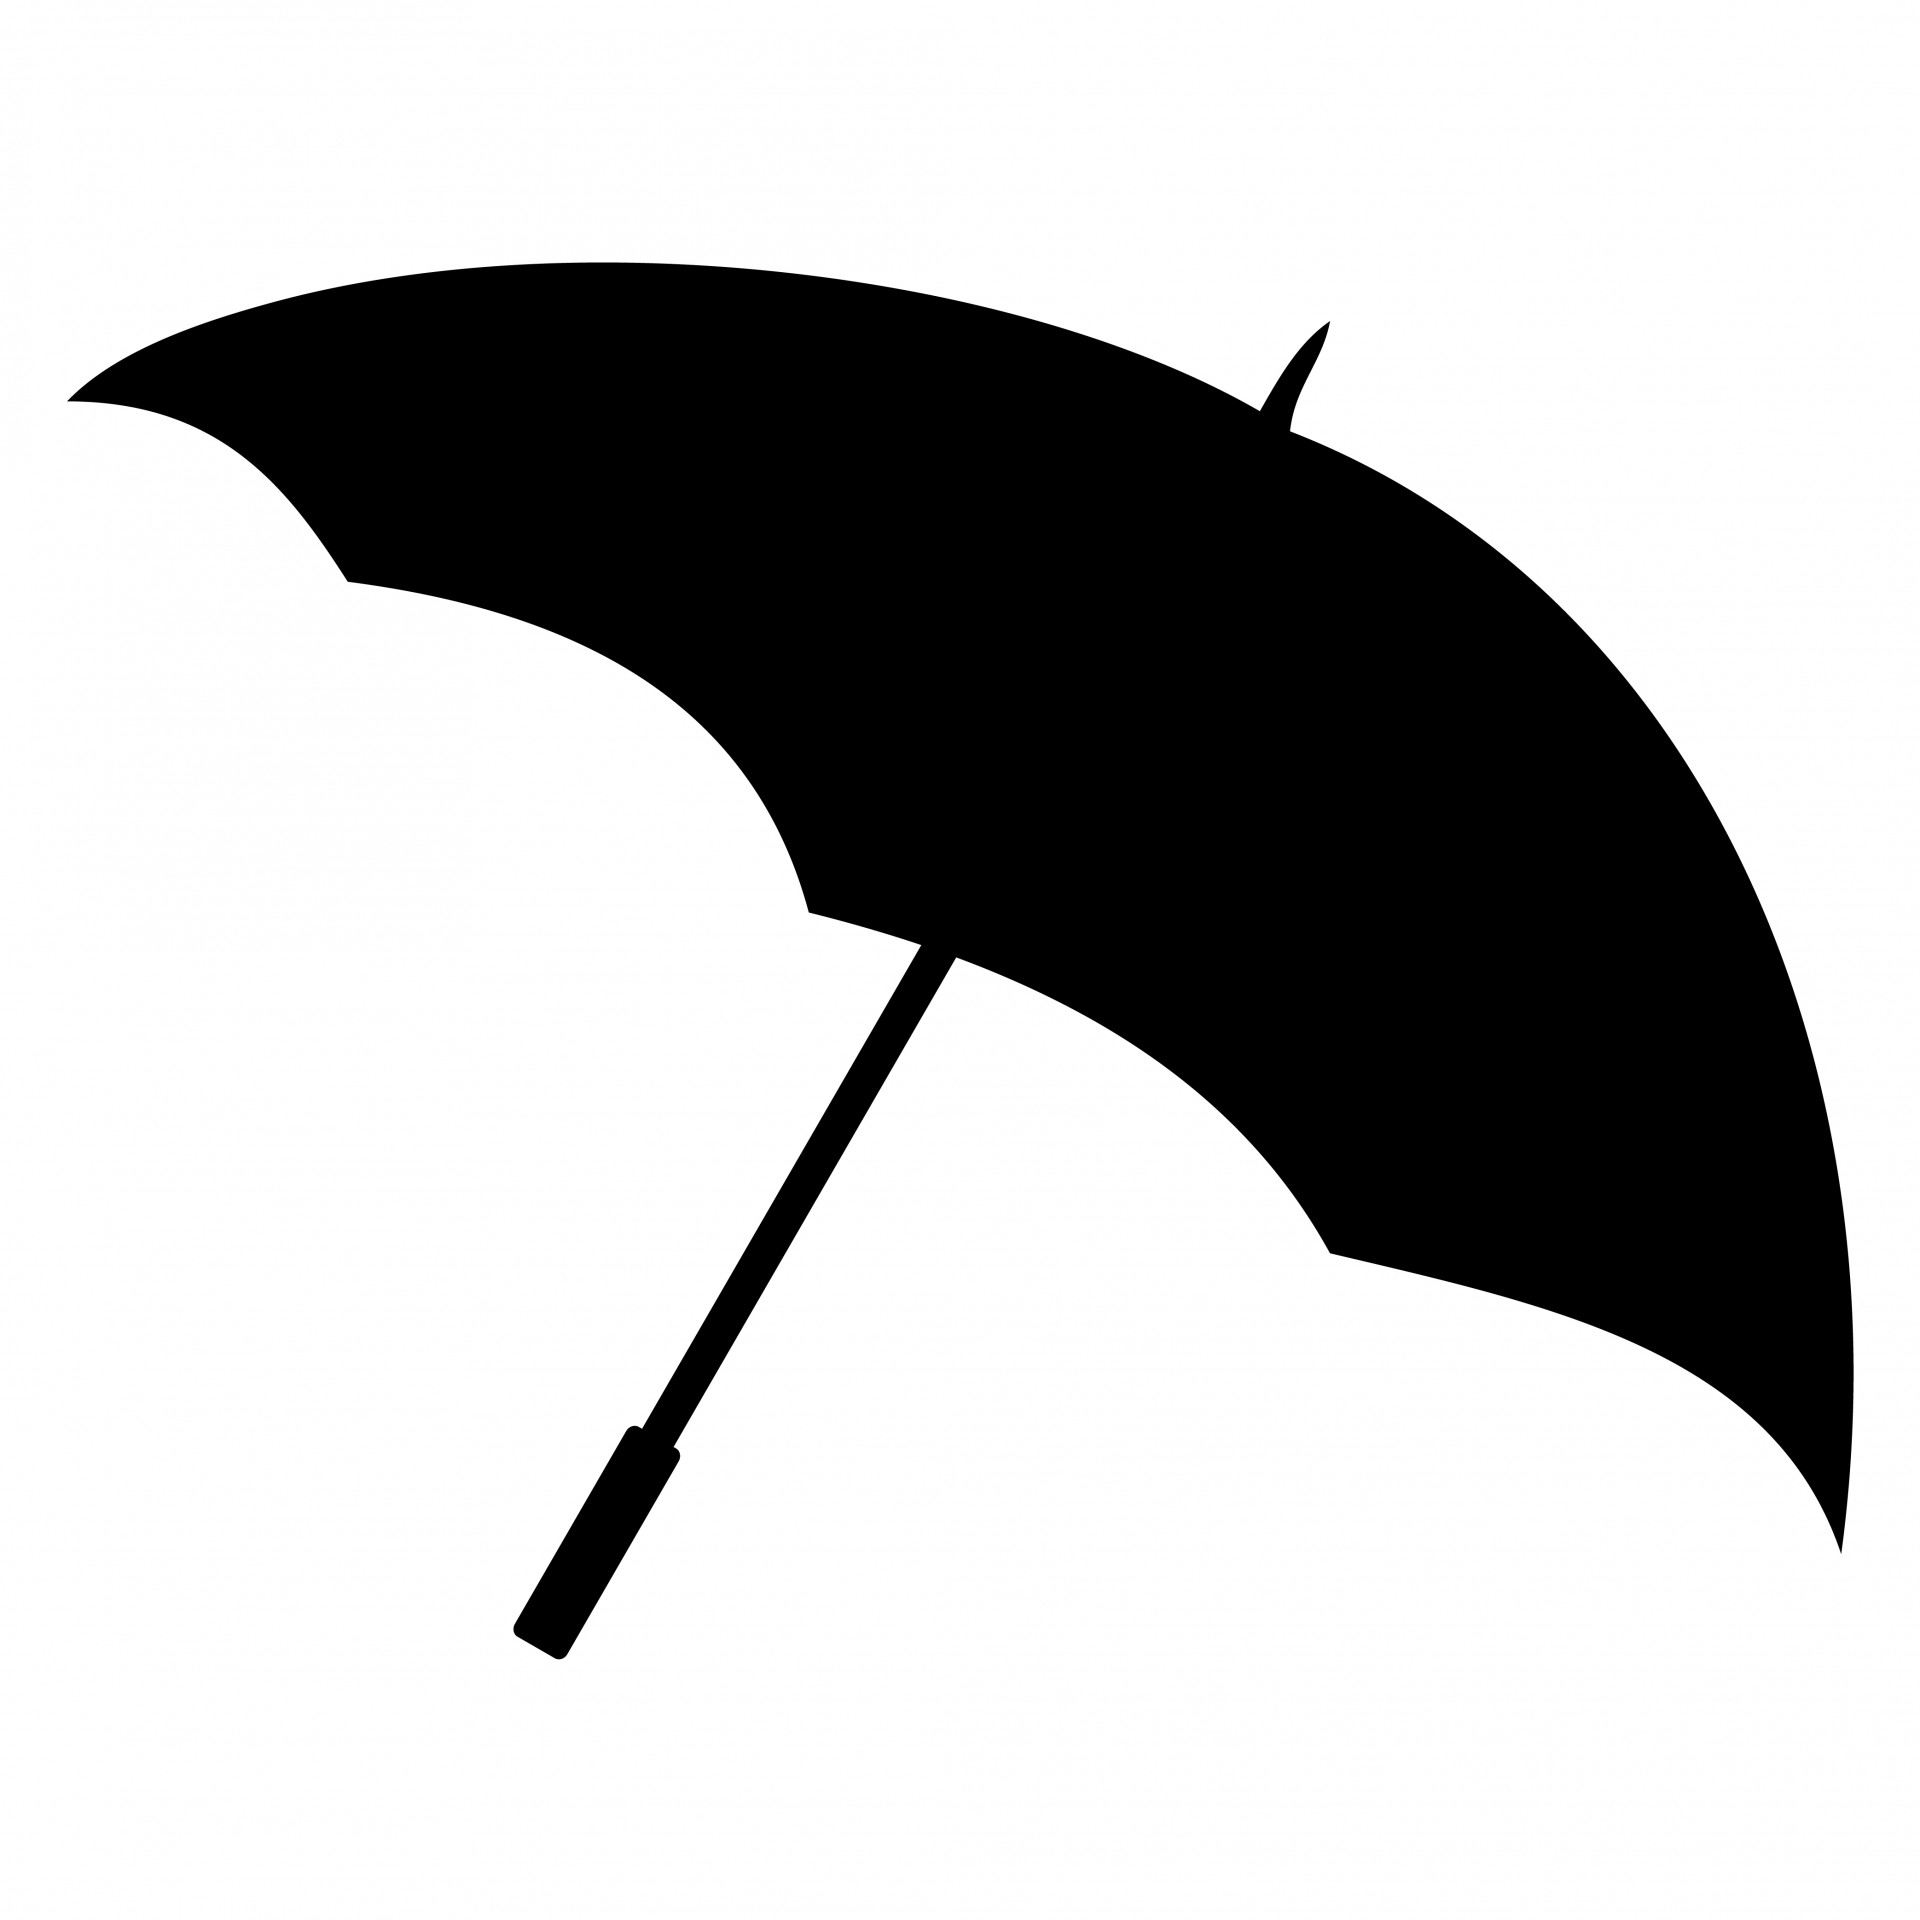 Umbrella Images - Public Domain Pictures - Page 1